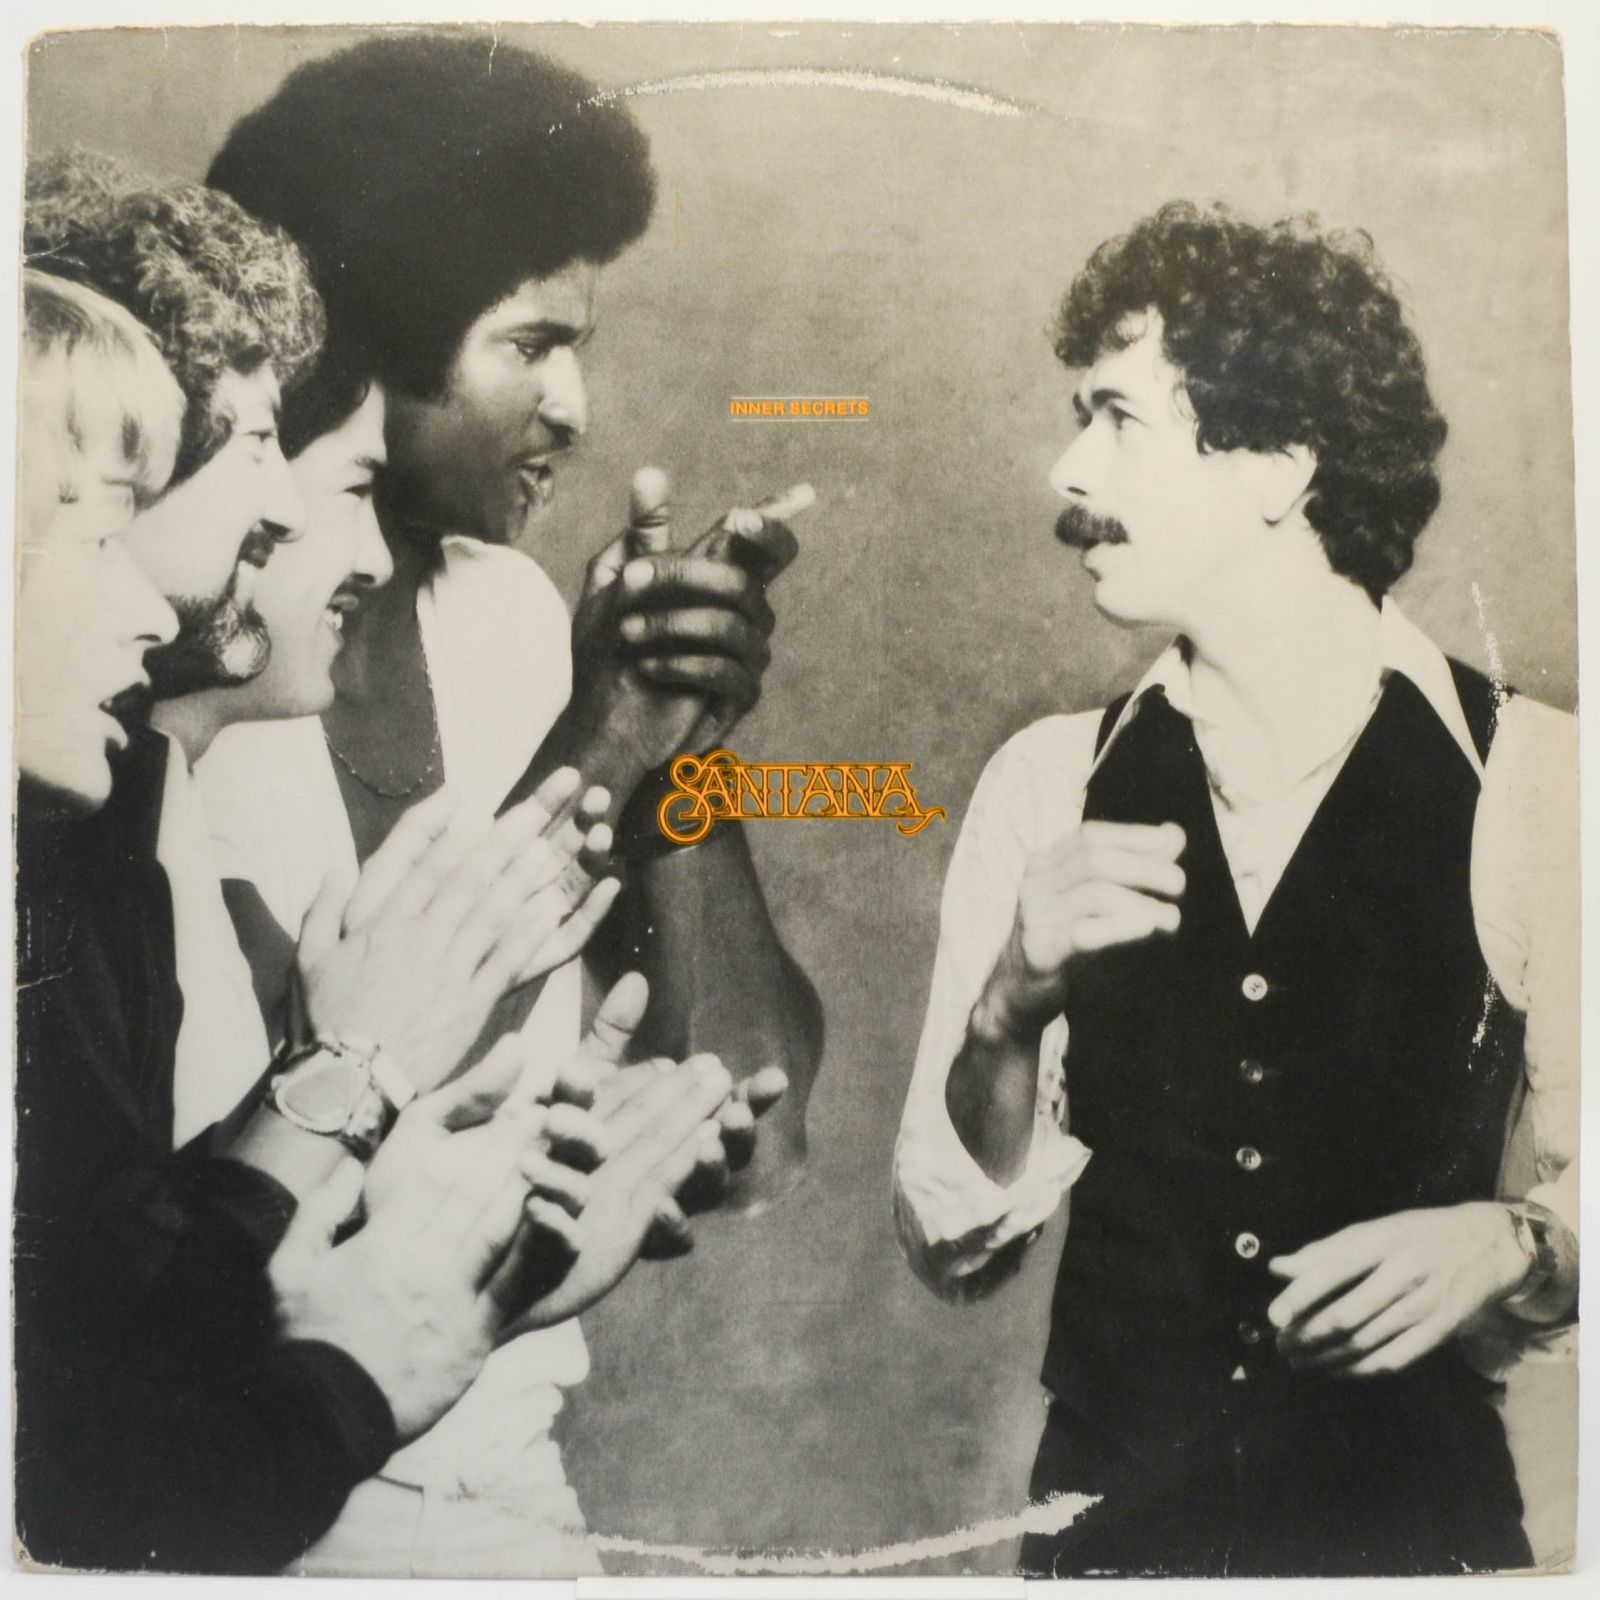 Santana — Inner Secrets, 1978